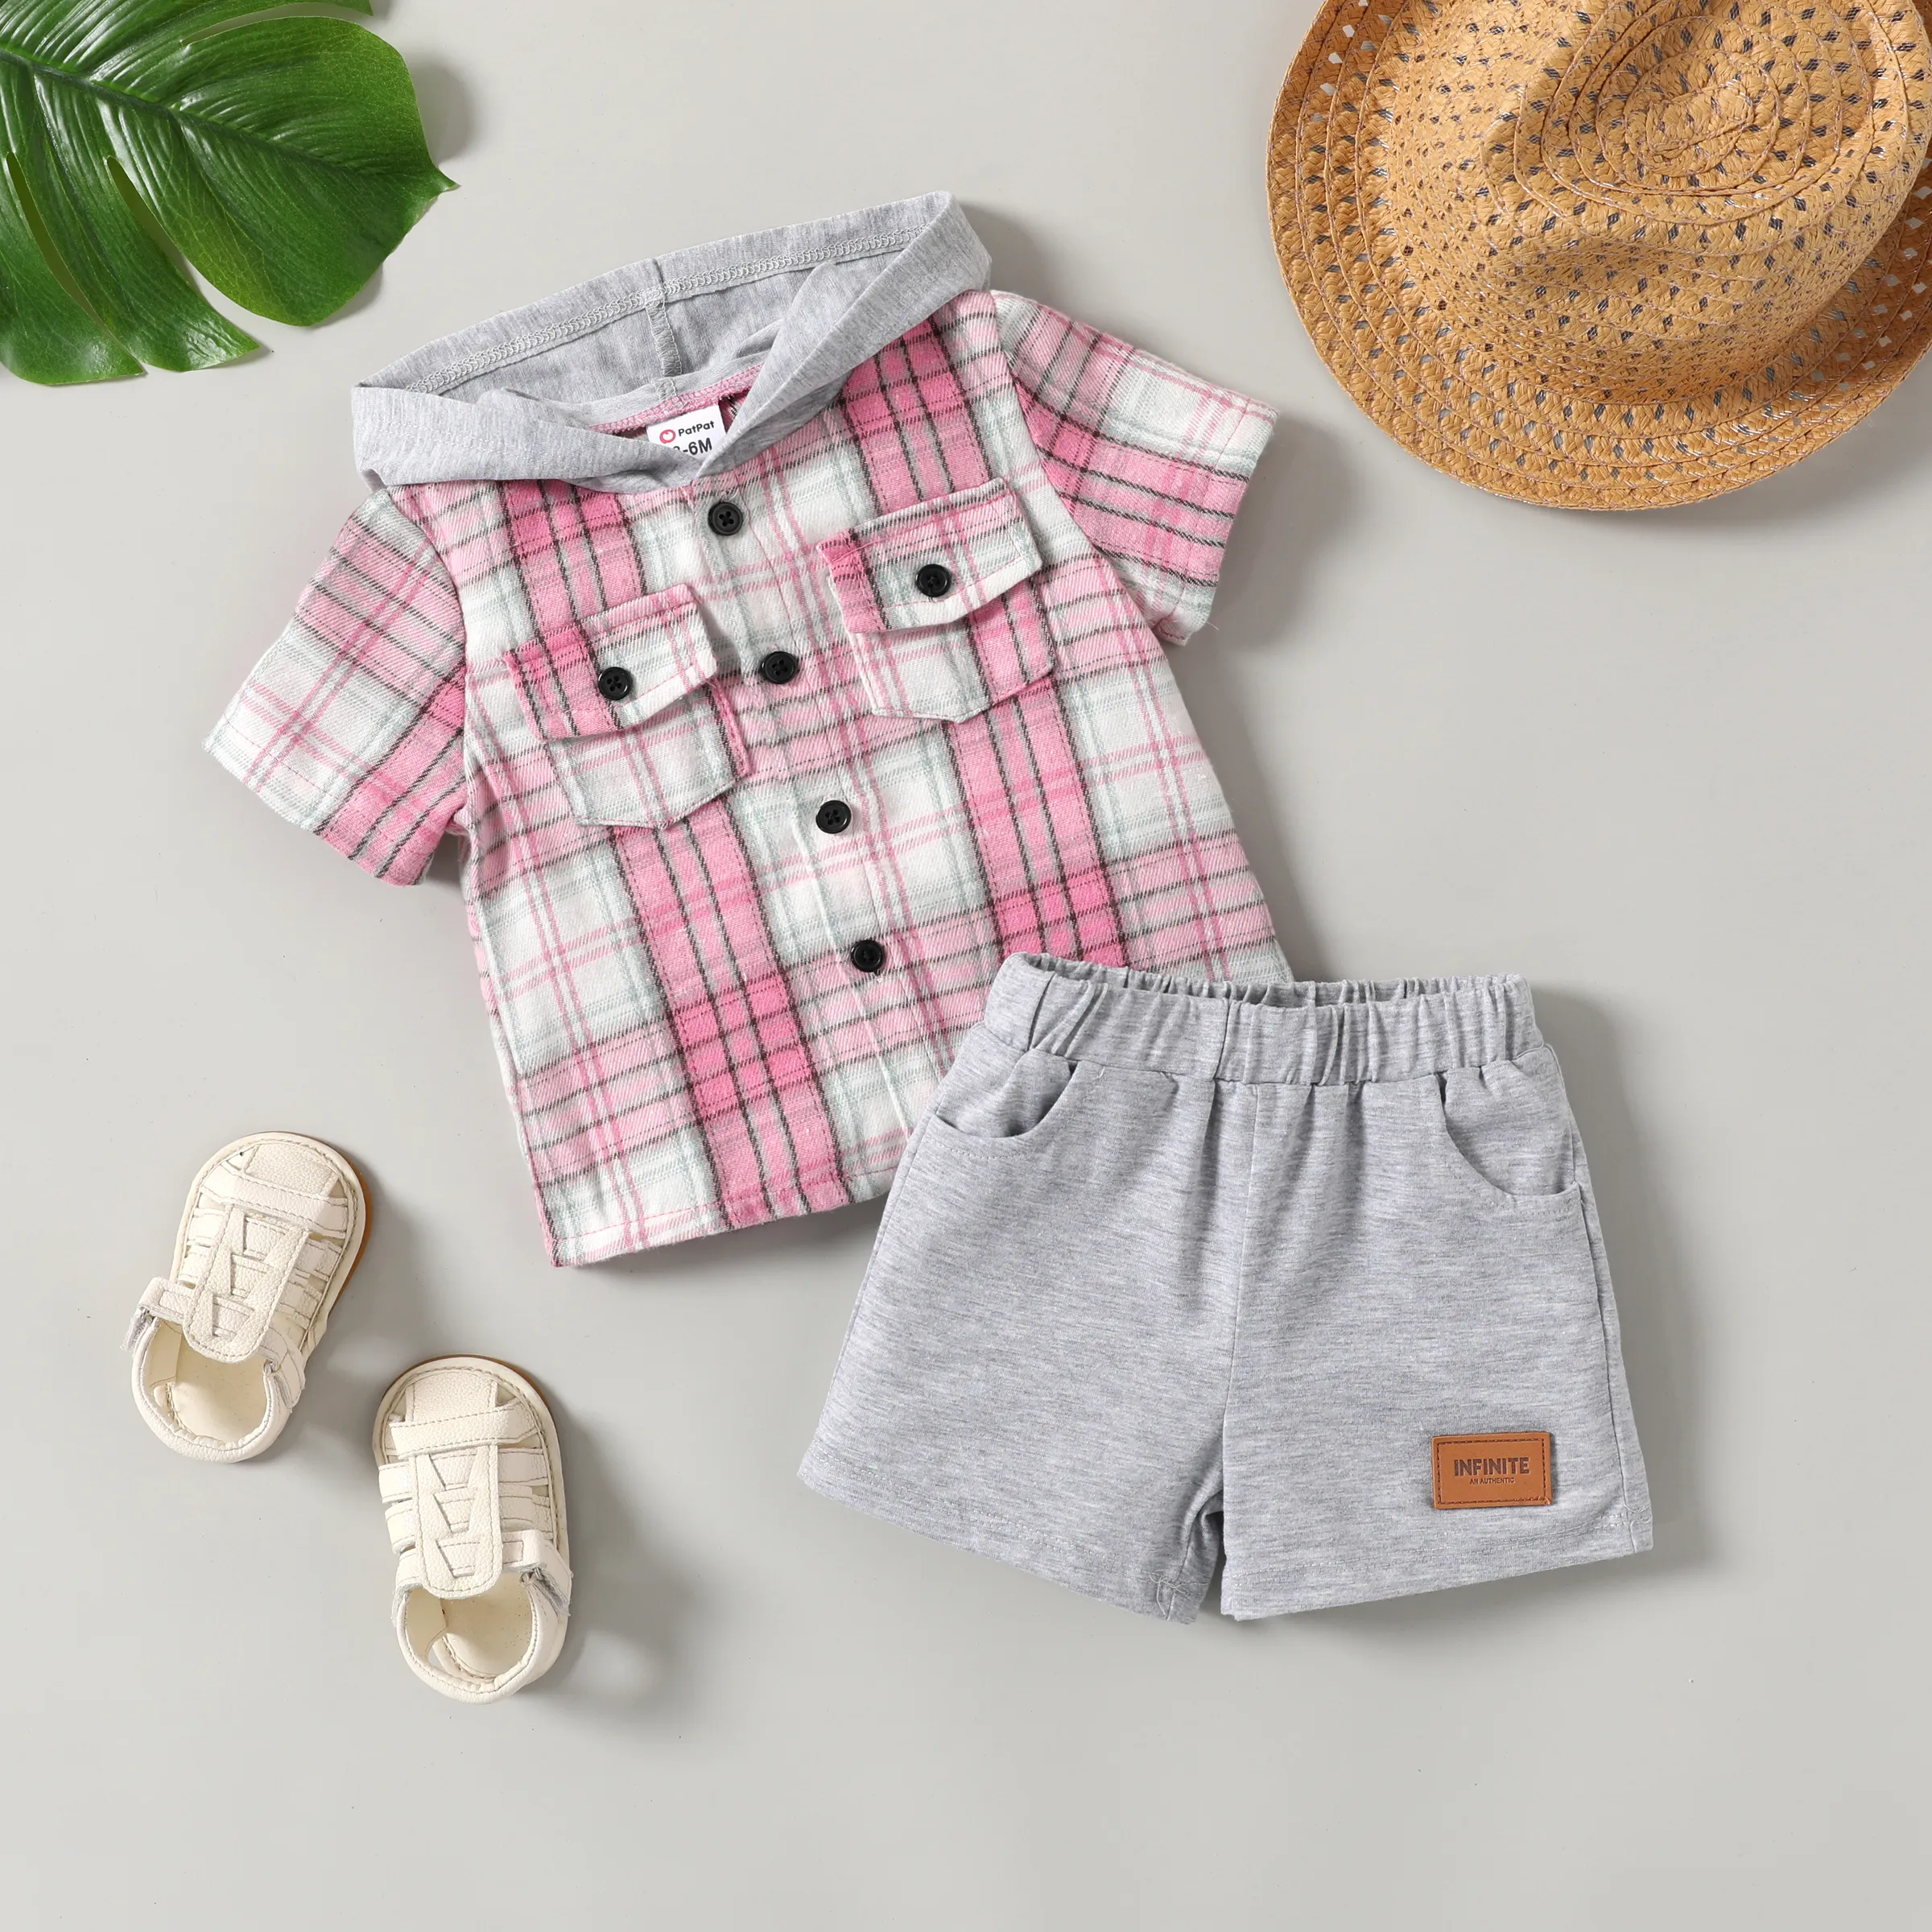 嬰兒/幼兒男孩 2 件格子印花連帽襯衫和短褲套裝